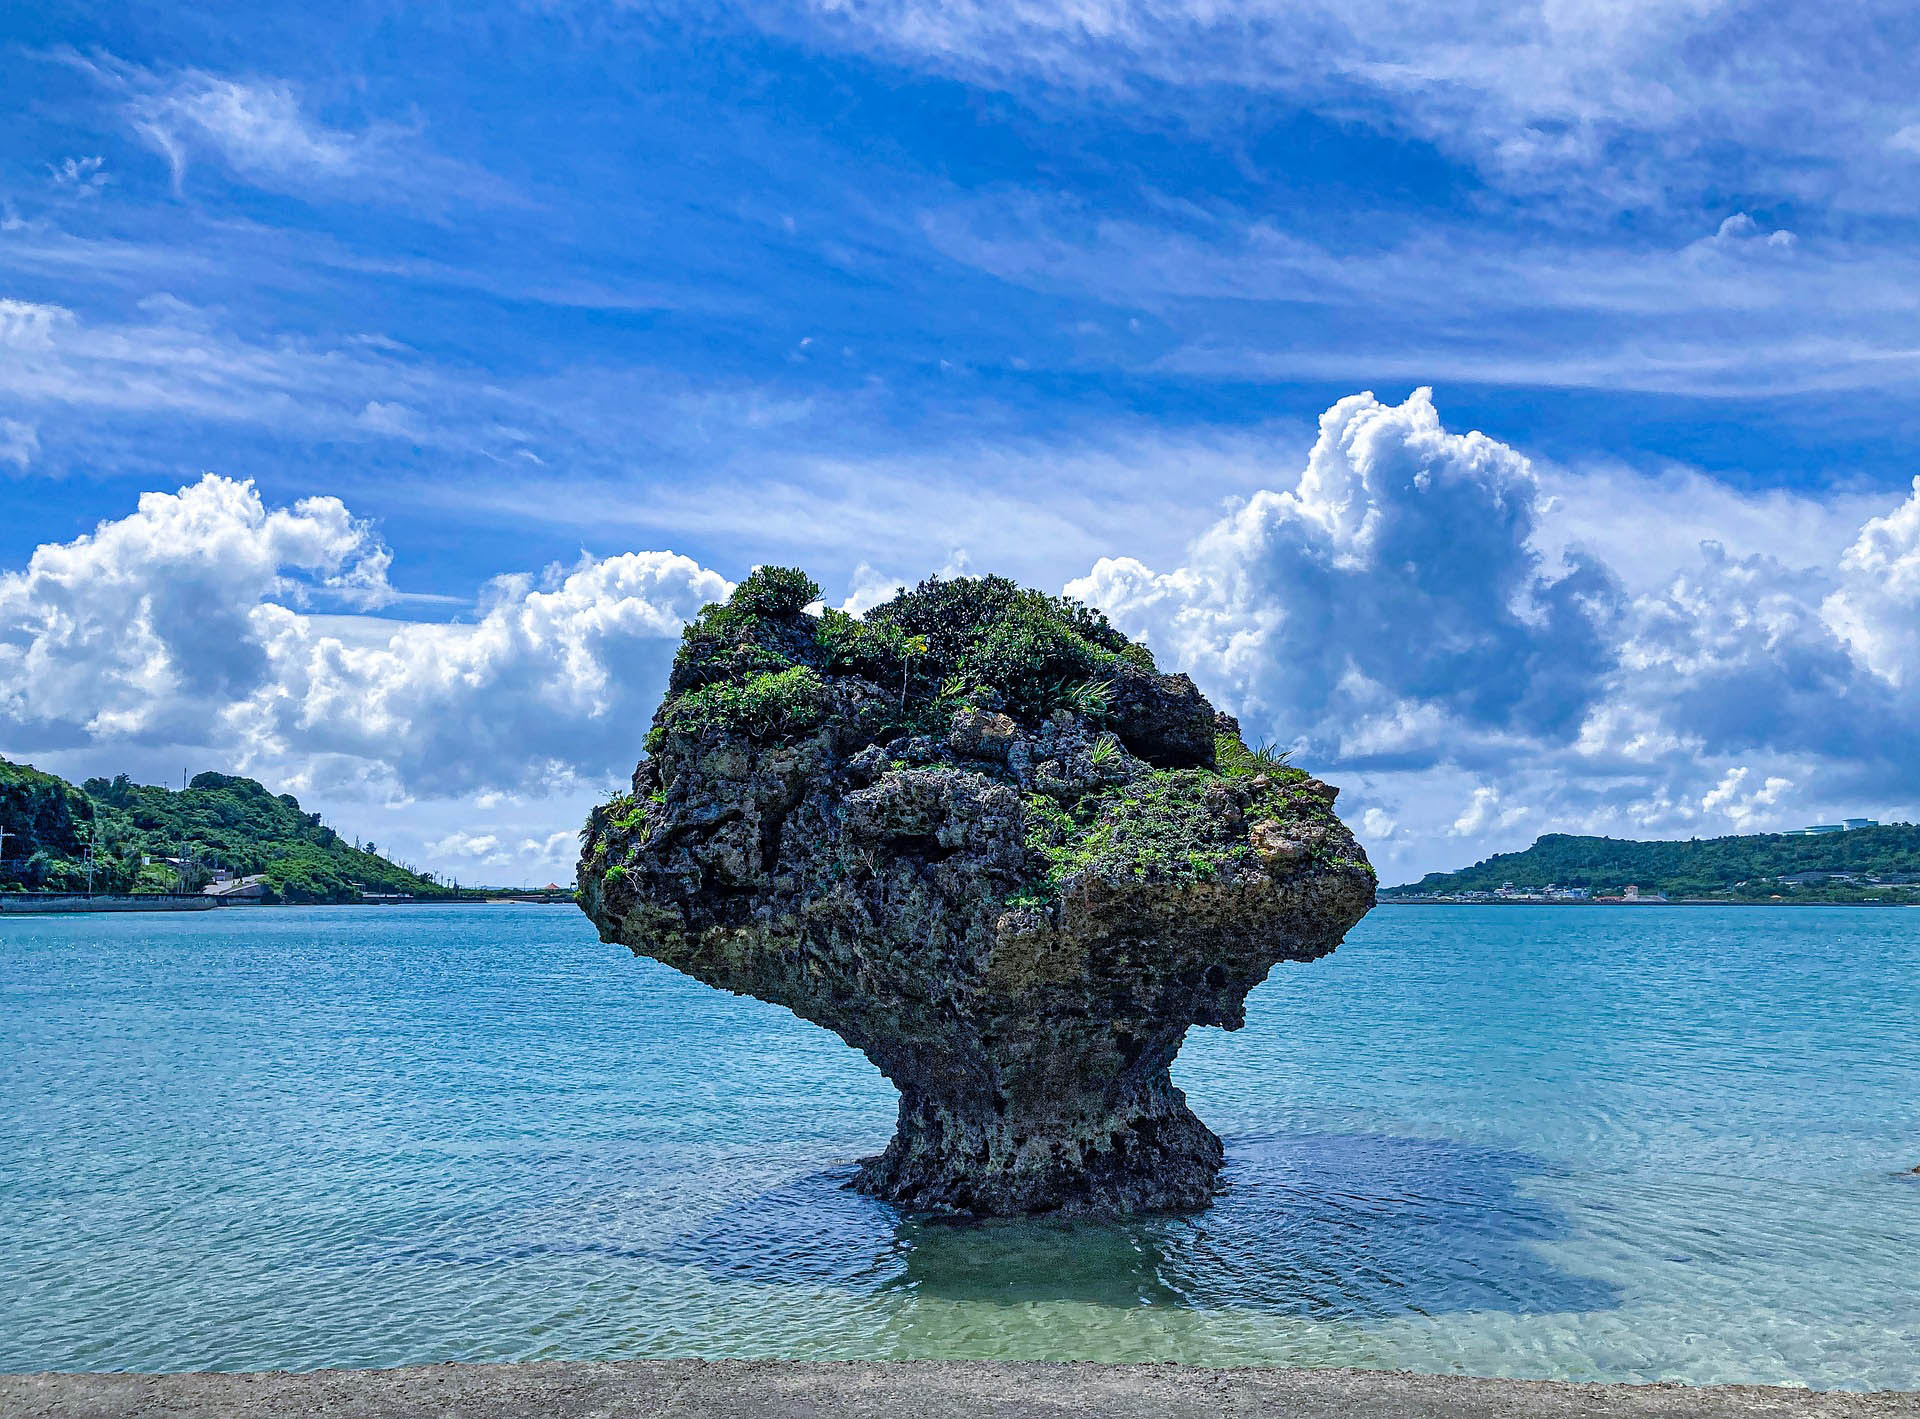 A natural mushroom-shaped rock in Okinawa